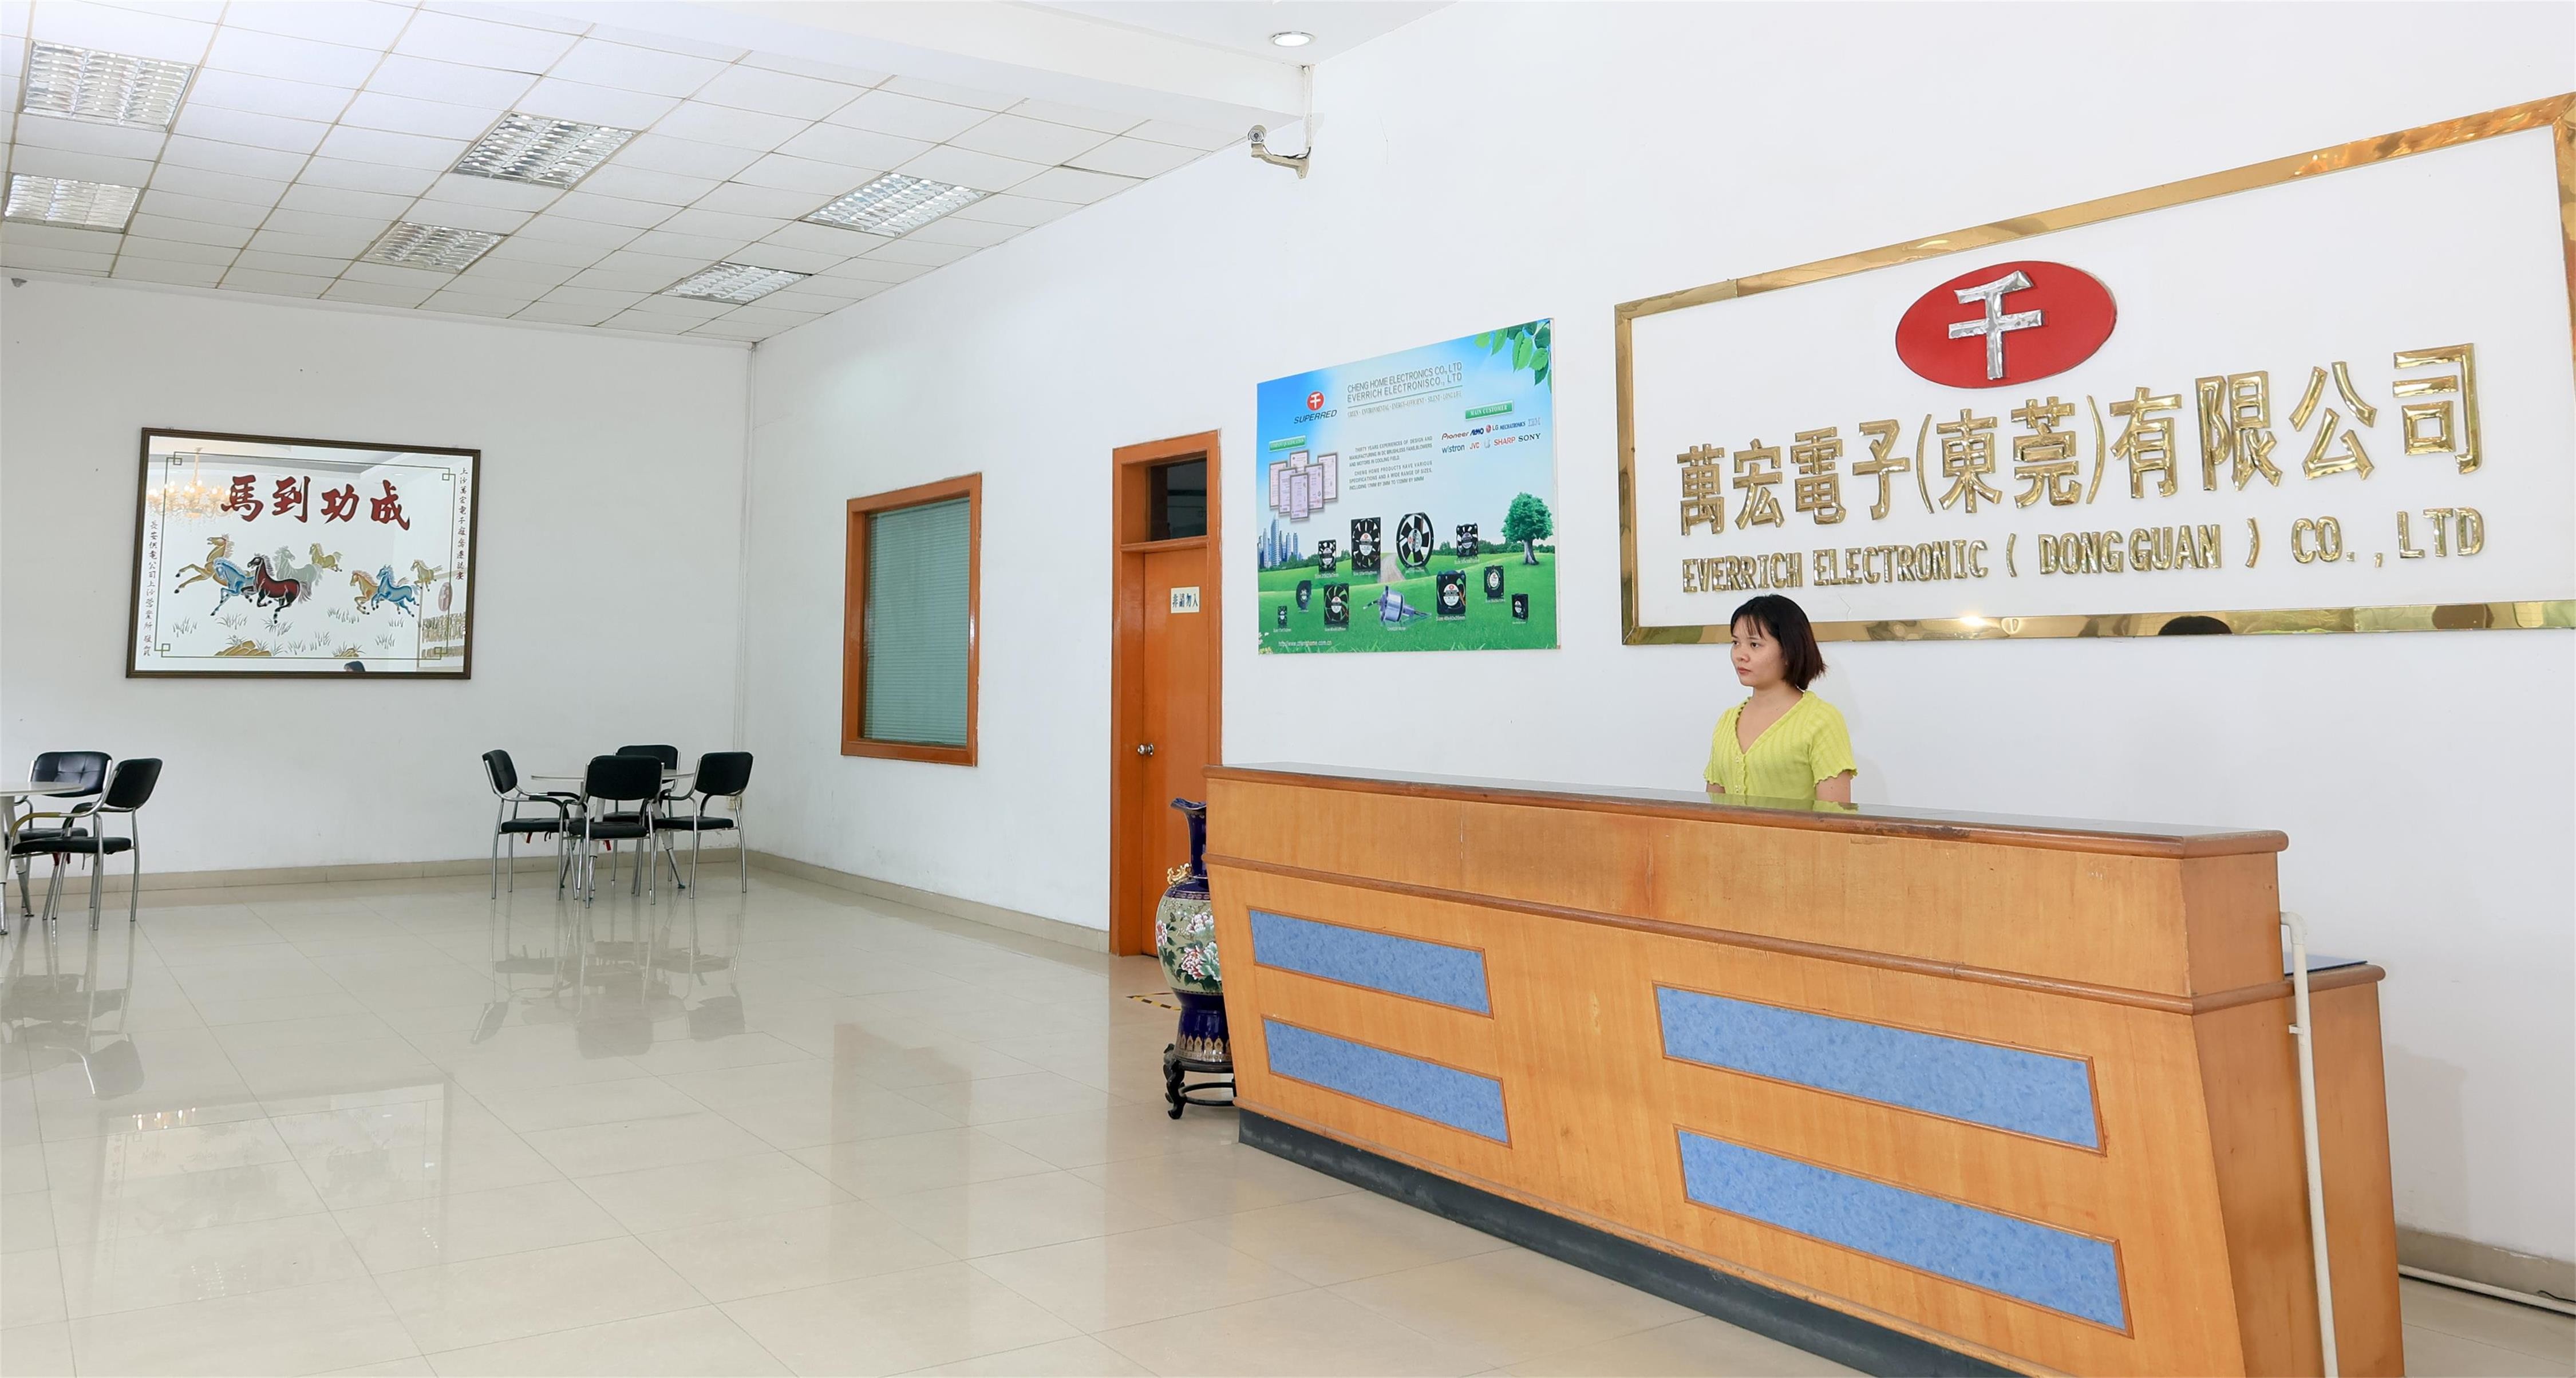 China Cheng Home Electronics Co.,Ltd company profile